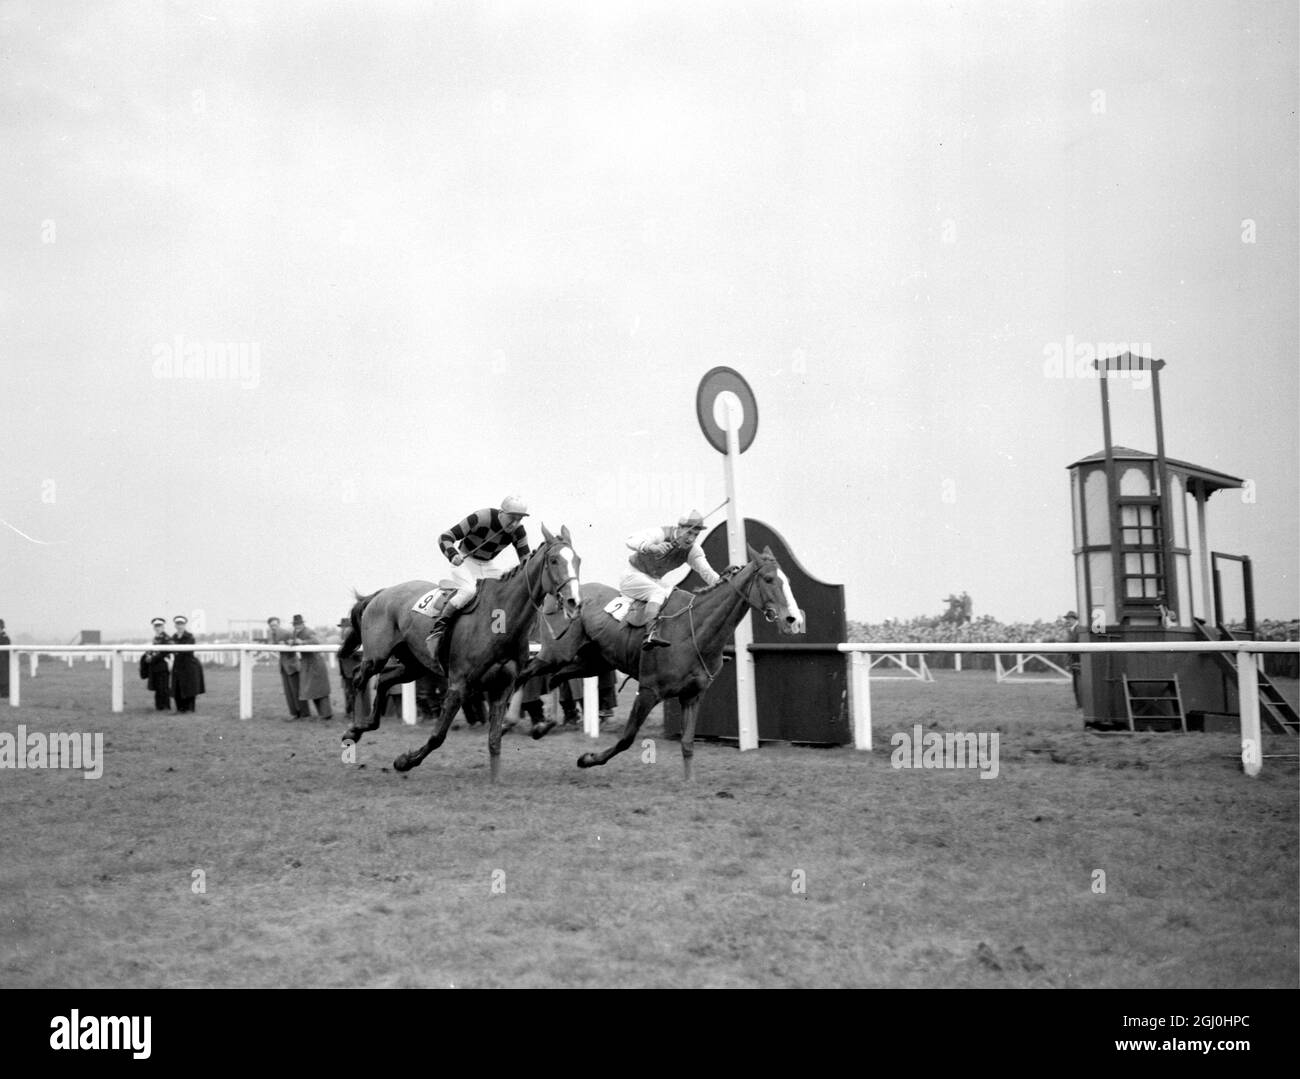 Royal Tan gewann den Grand National bei einem Aintree in Liverpool heute mit einem Hals von Tudor Line, mit irischen Eidechsen an dritter Stelle. Fünf Pferde beendeten das zermürbende viereinhalb Meilen Rennen, aus einem Feld von 29. März 1954 Stockfoto